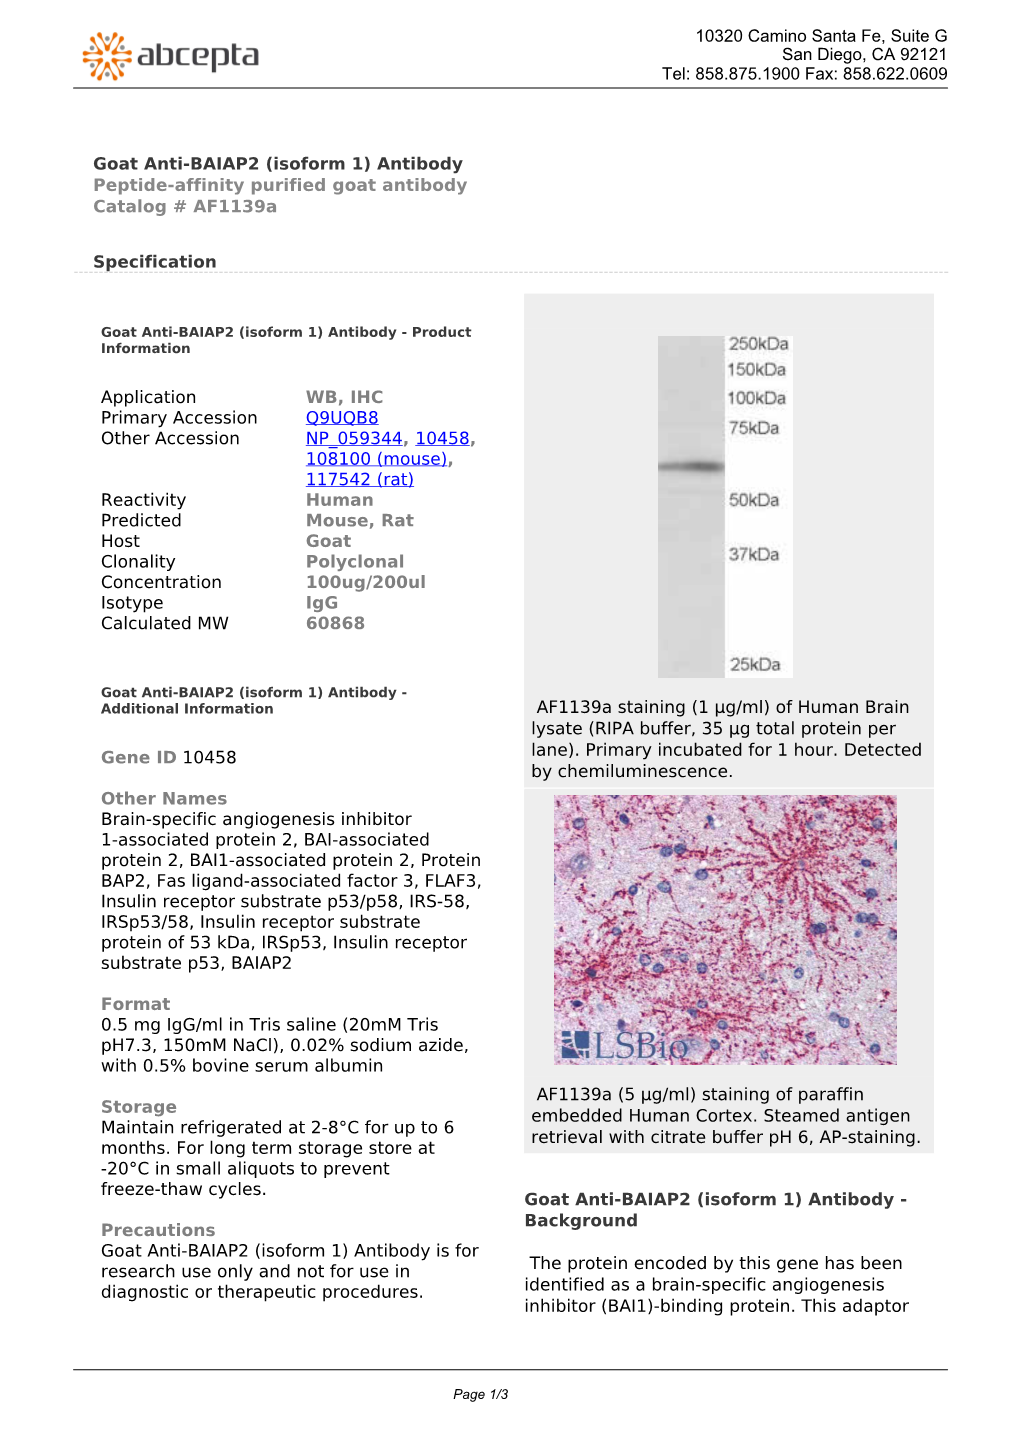 Goat Anti-BAIAP2 (Isoform 1) Antibody Peptide-Affinity Purified Goat Antibody Catalog # Af1139a